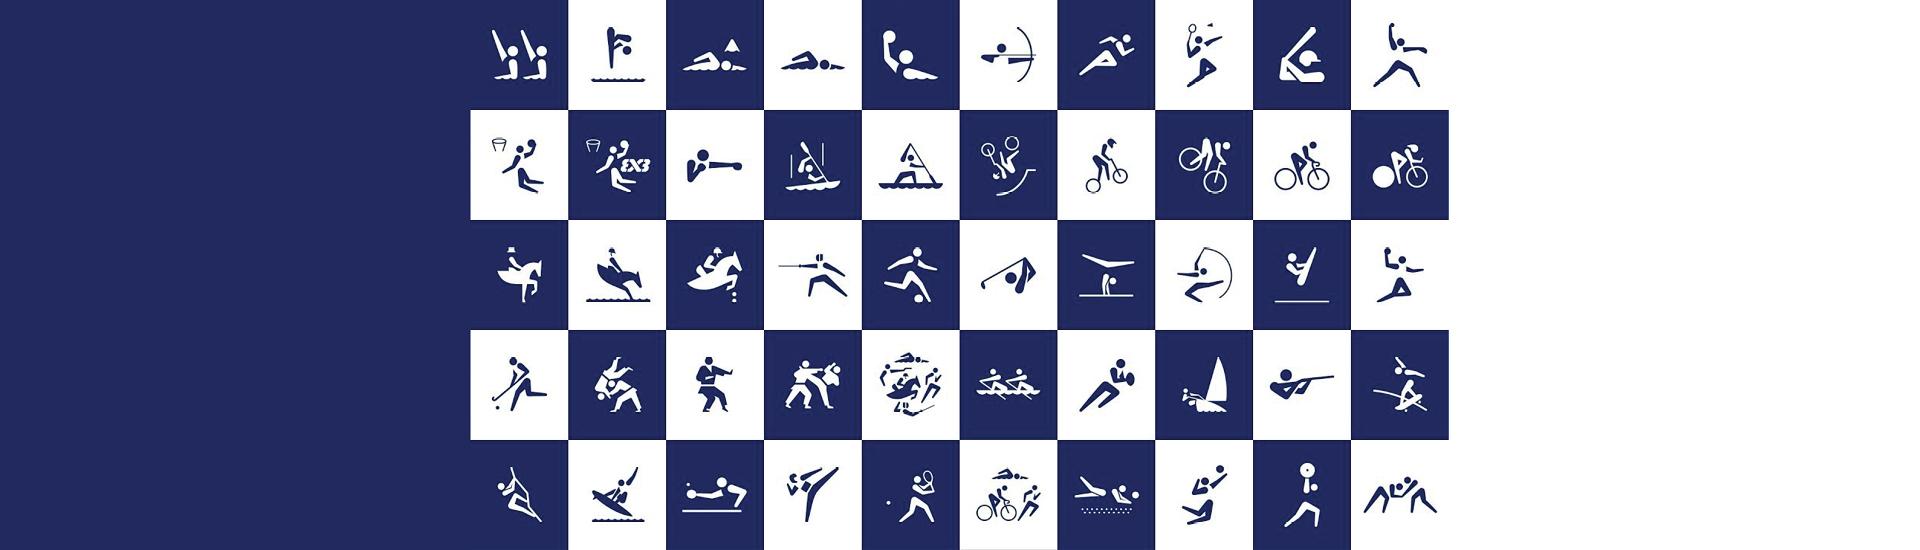 Símbolos Inovadores do Esporte, Projeto Gráfico dos Jogos Olímpicos, Articles